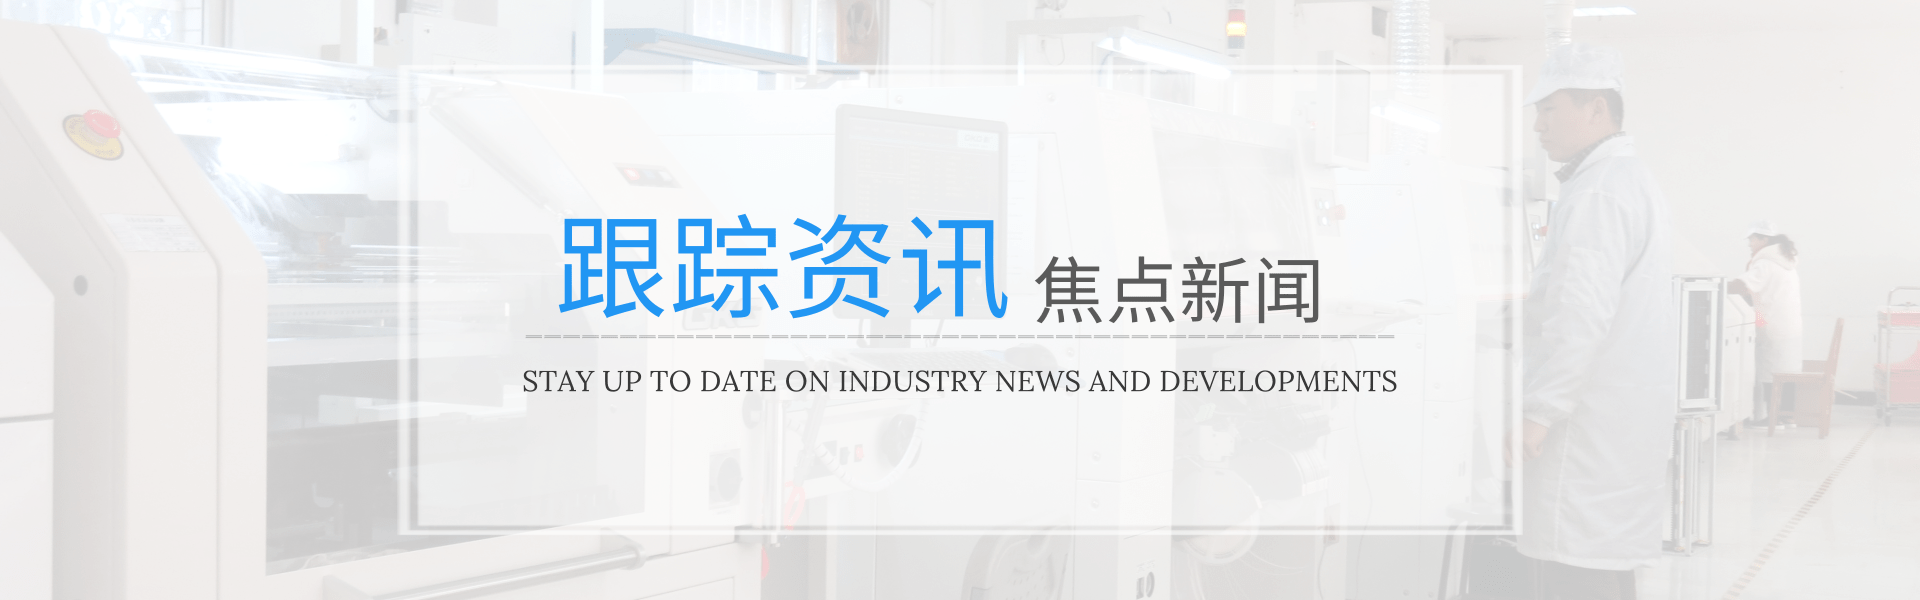 国内各类全自动点胶机设备的价格情况介绍-深圳市润之鑫科技有限公司